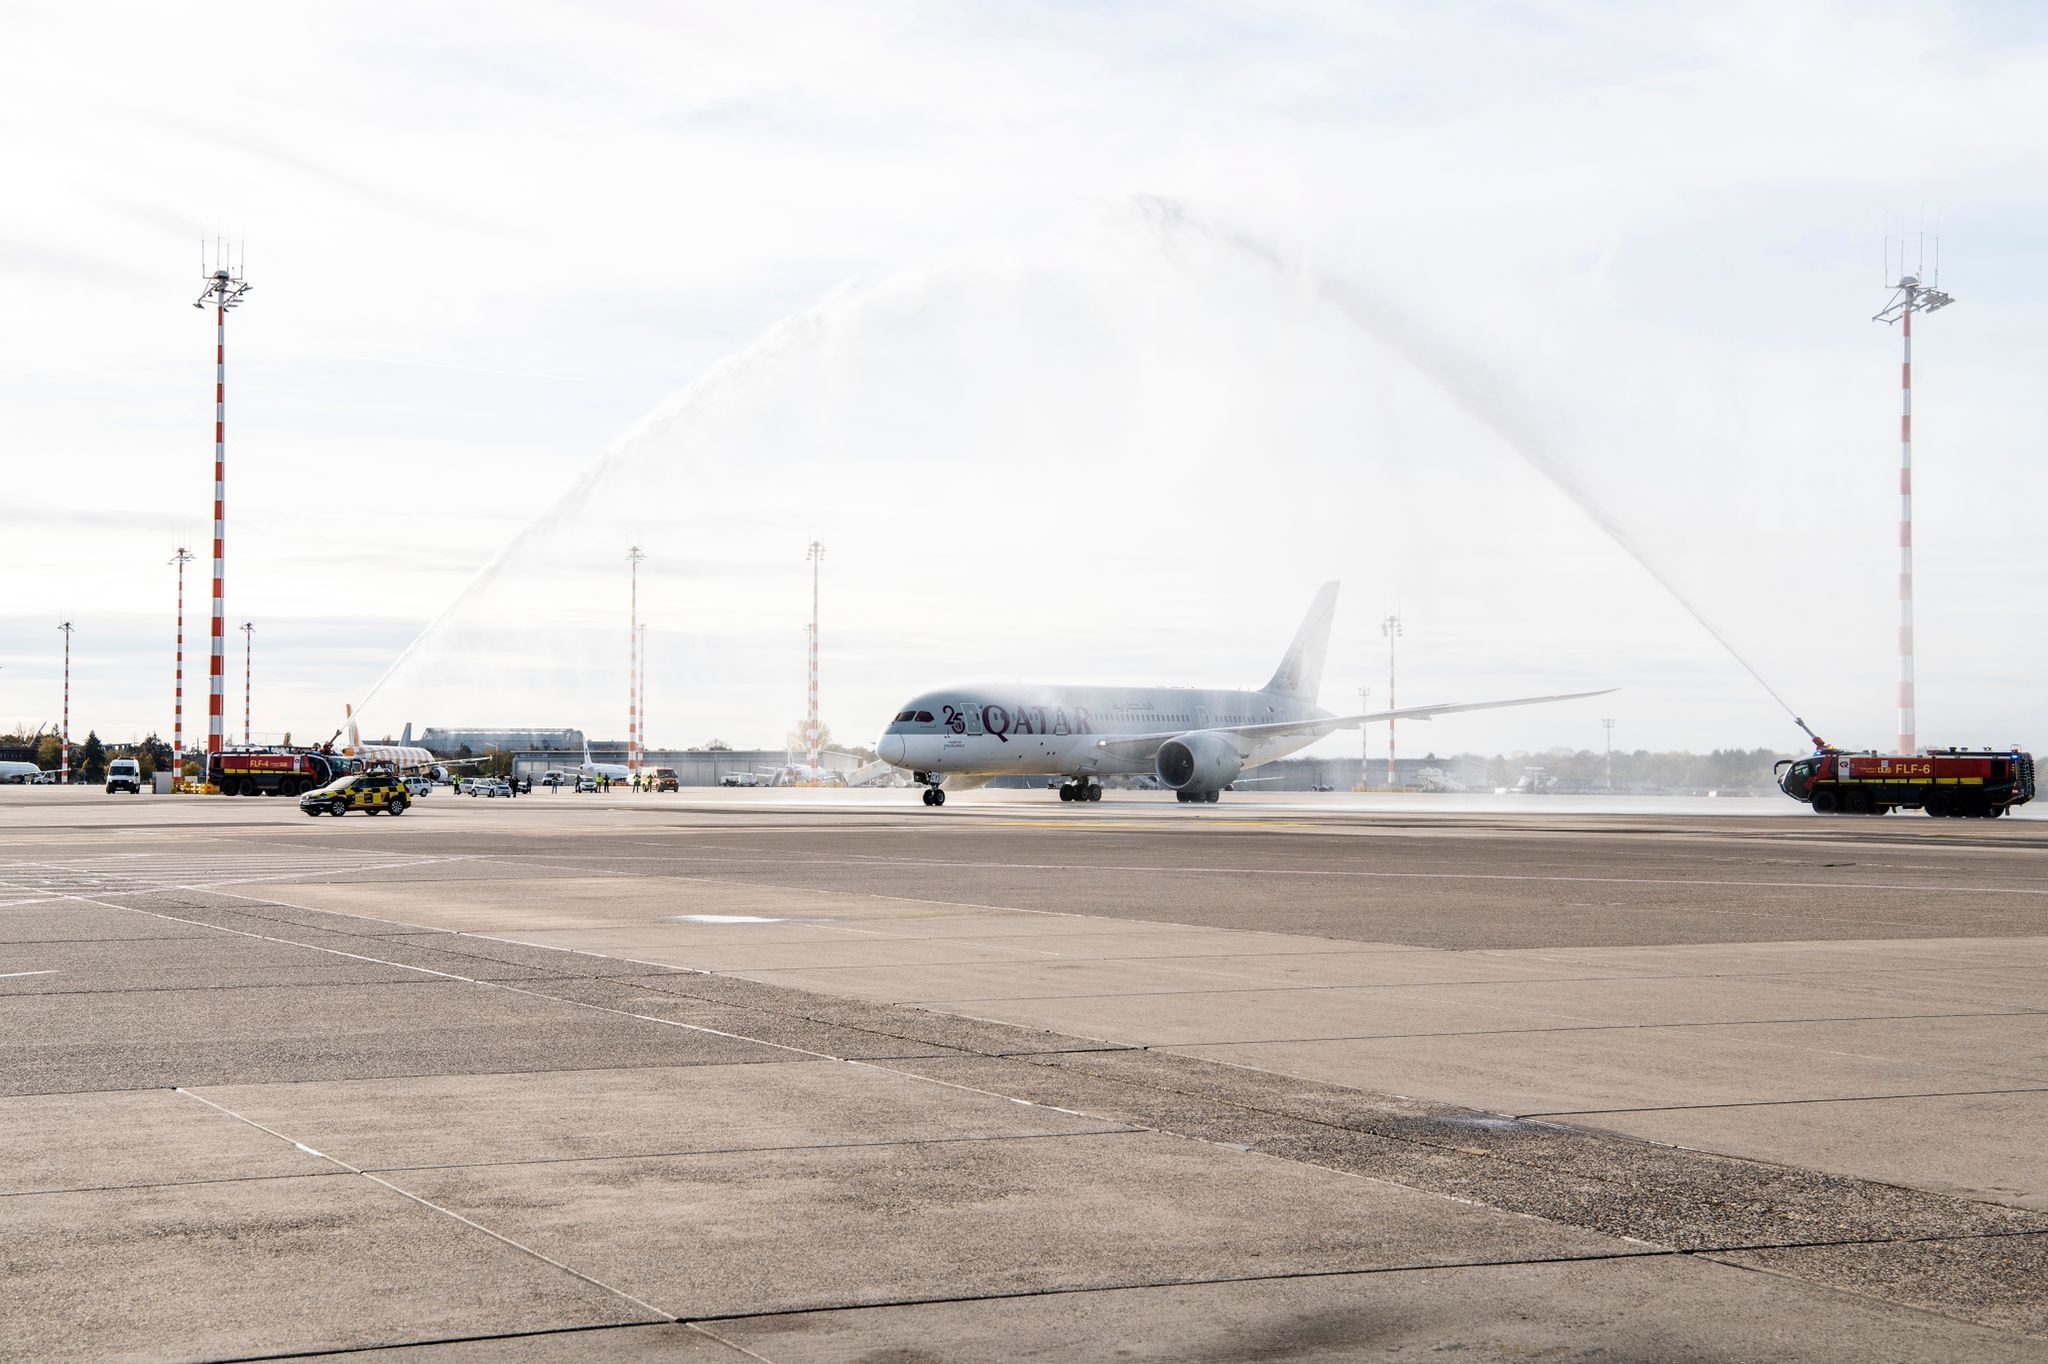 Qatar Airways DUS launch